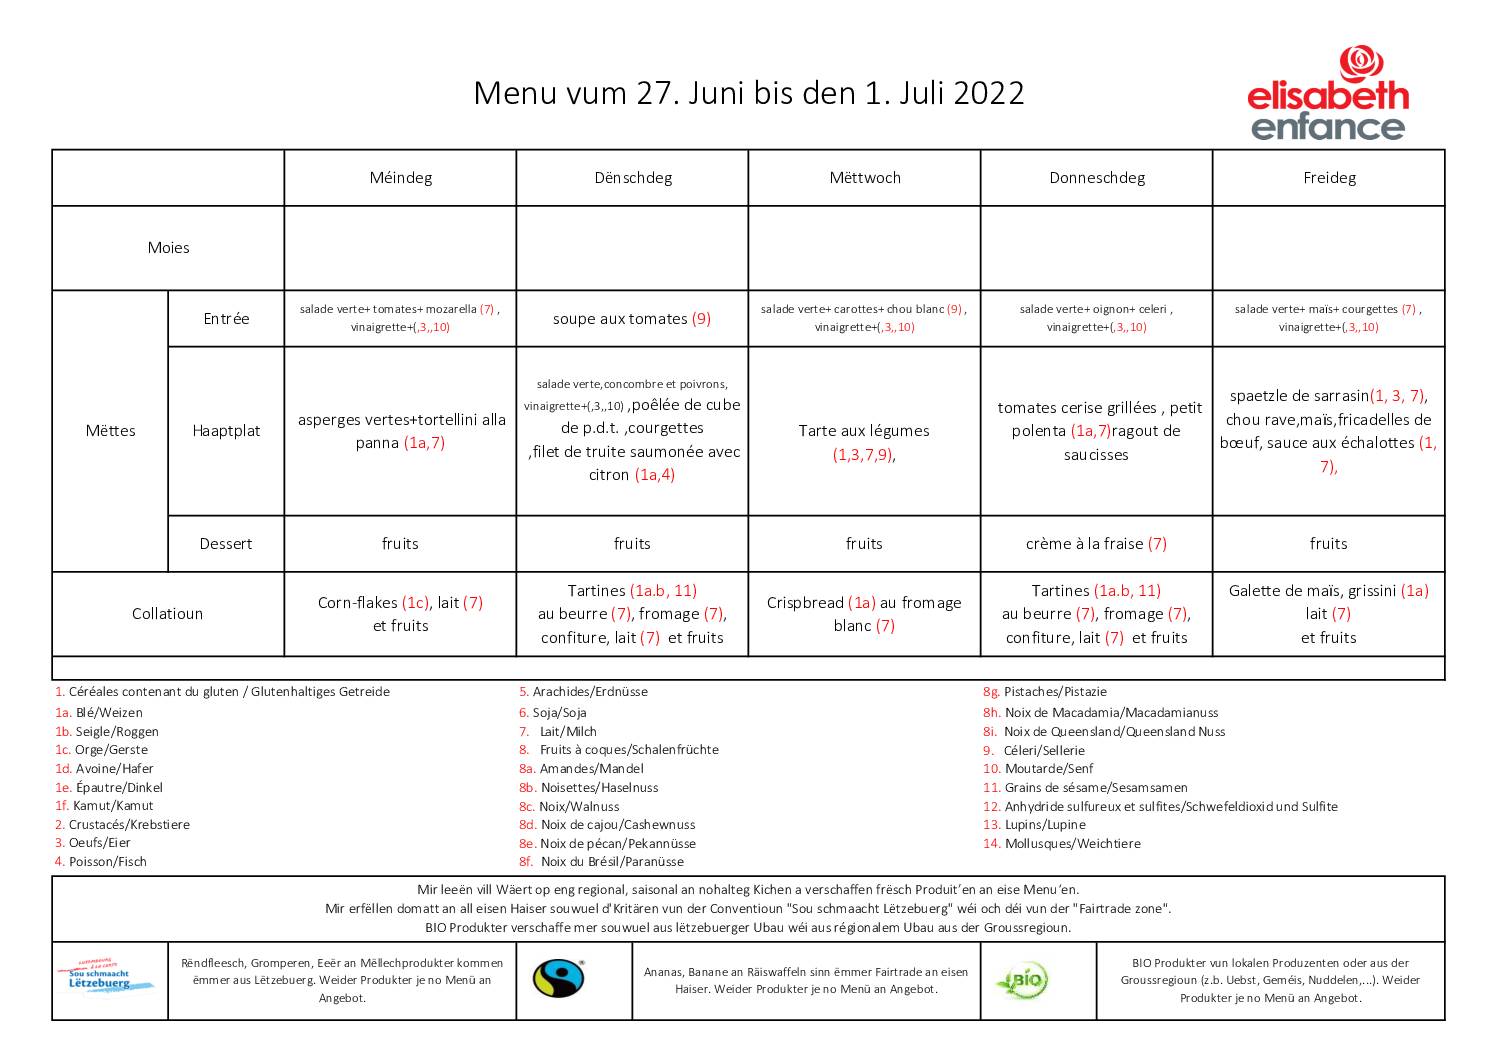 menus de la semaine du 27 juin au 1 juillet 2022